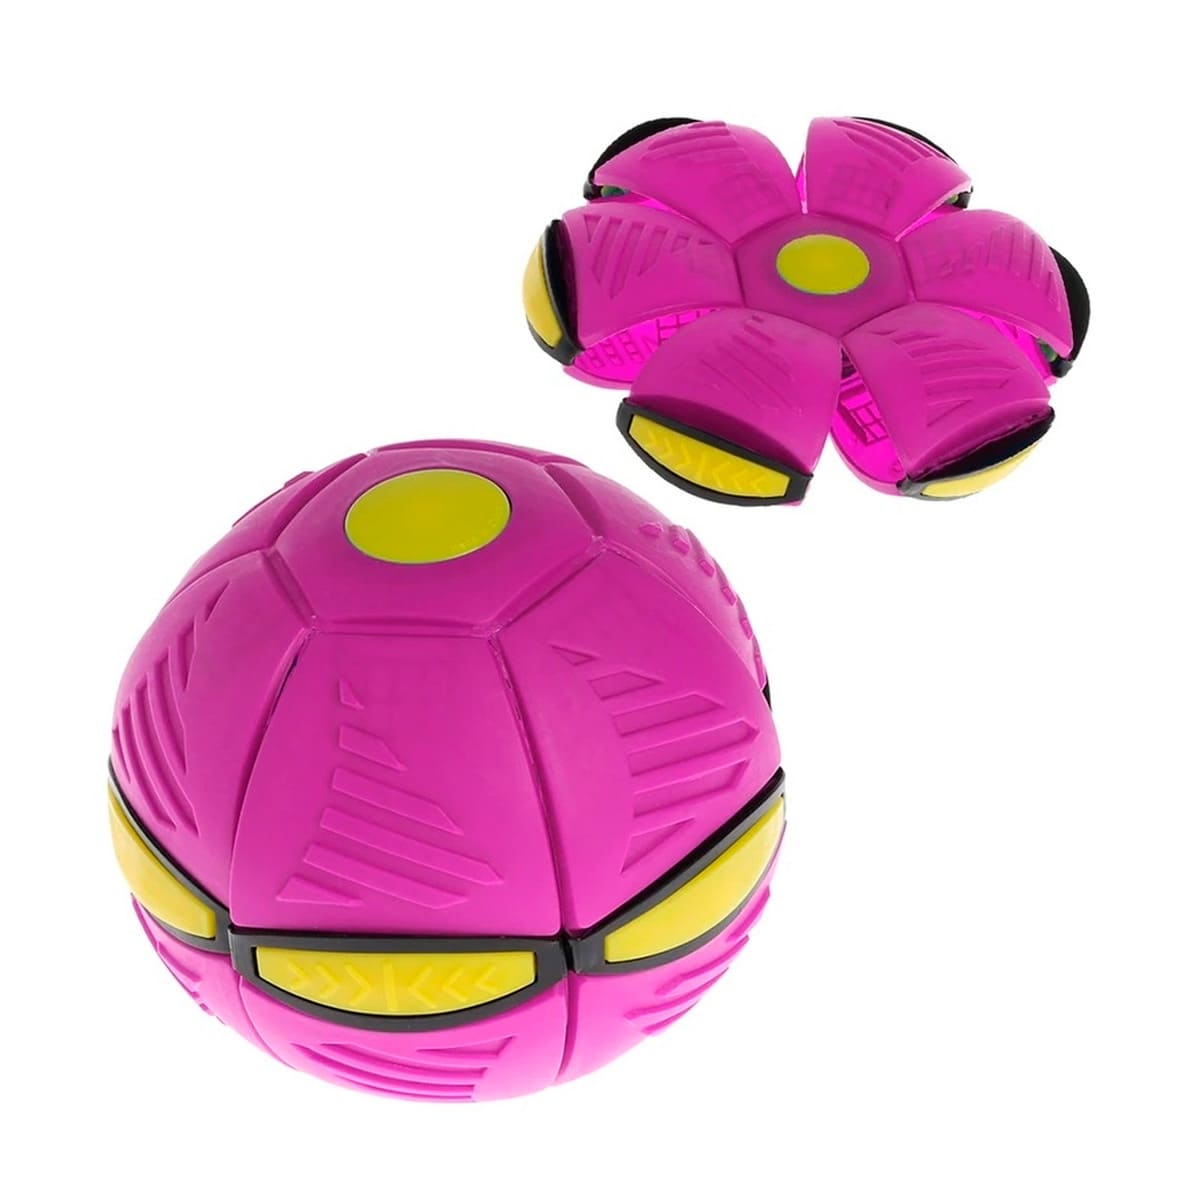 VORCOOL Bola inflável divertida de 22 cm, bola de desenho animado, bola de  PVC espessa, brinquedo para crianças pequenas (diâmetro de 22 cm)